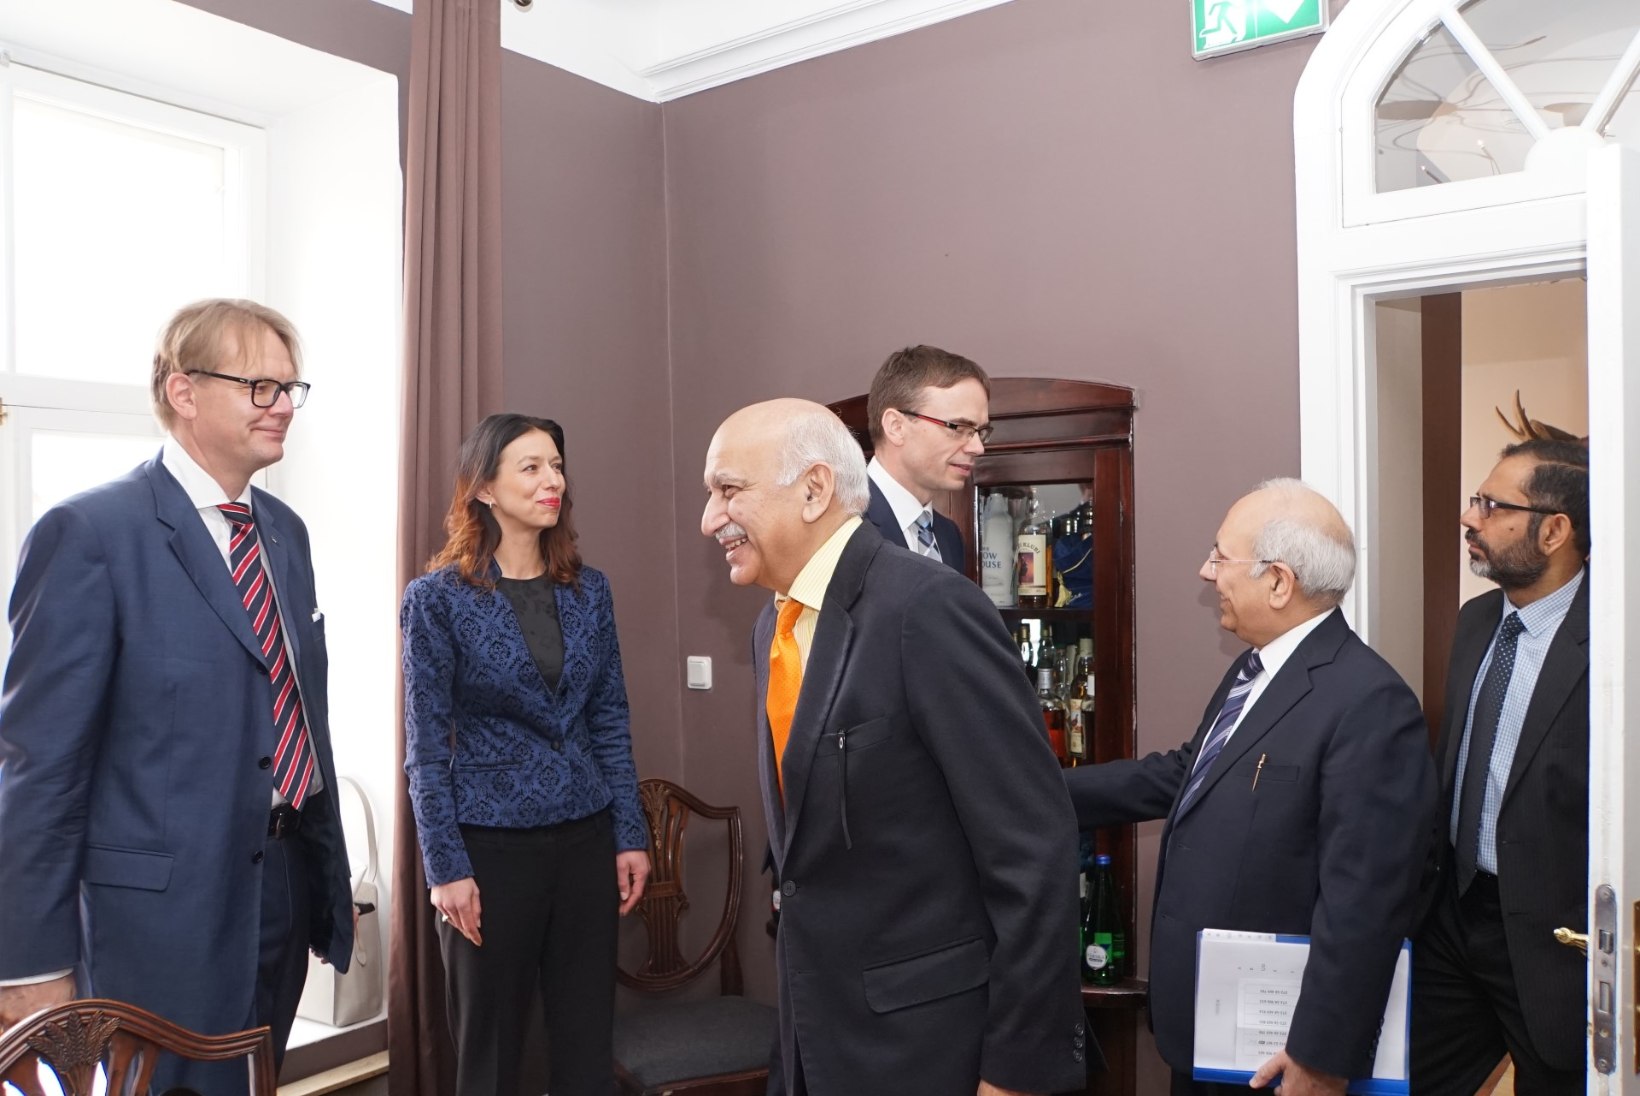 FOTOD | Välisminister Mikser kohtus India asevälisministriga, arutati omavahelisi suhteid 